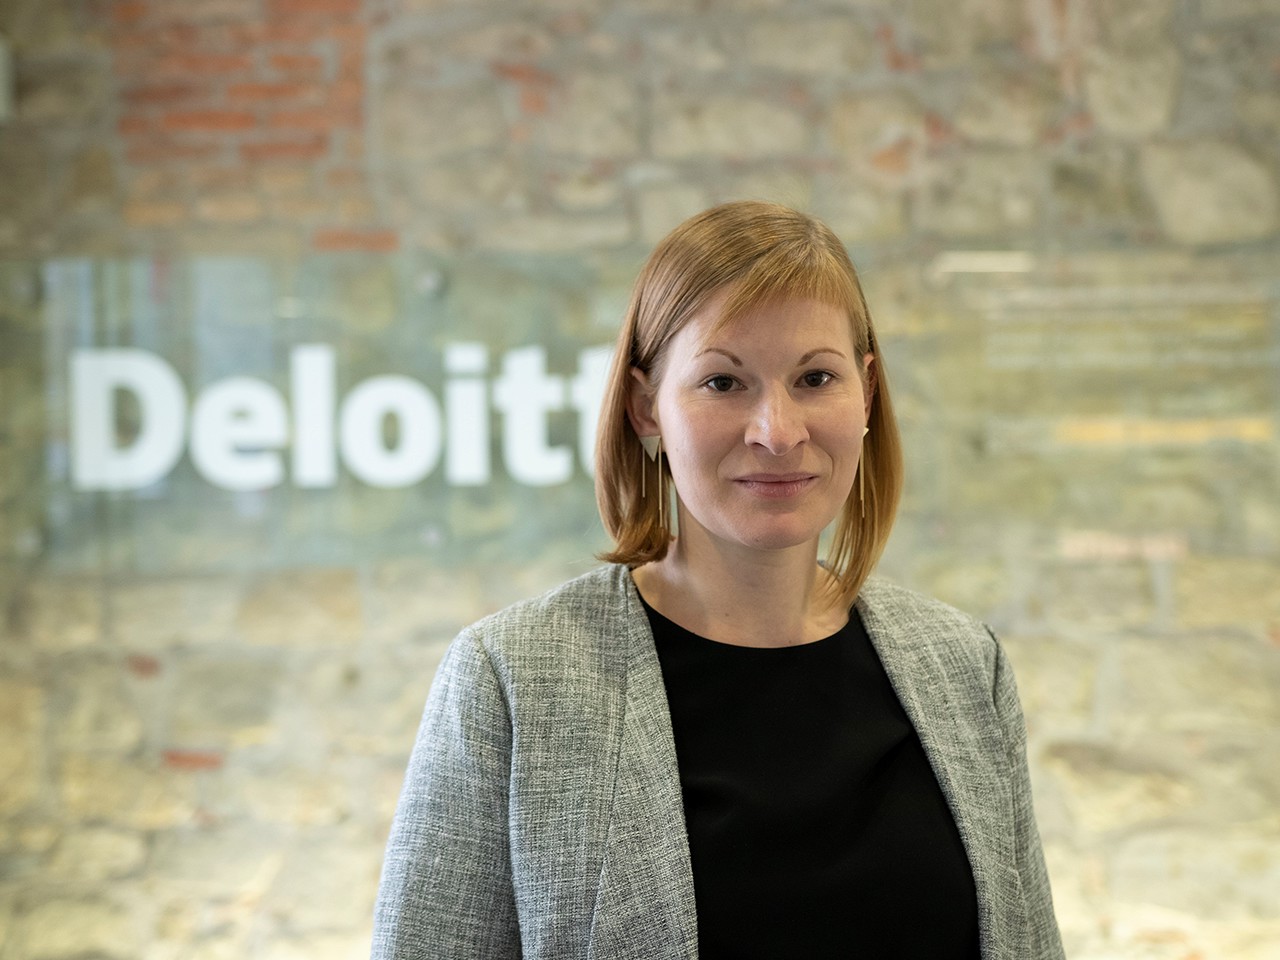 Eva-Maria Burger ist Managerin bei Deloitte Consulting und beschäftigt sich mit der Stärkung von Vielfalt und Inklusion in Organisationen